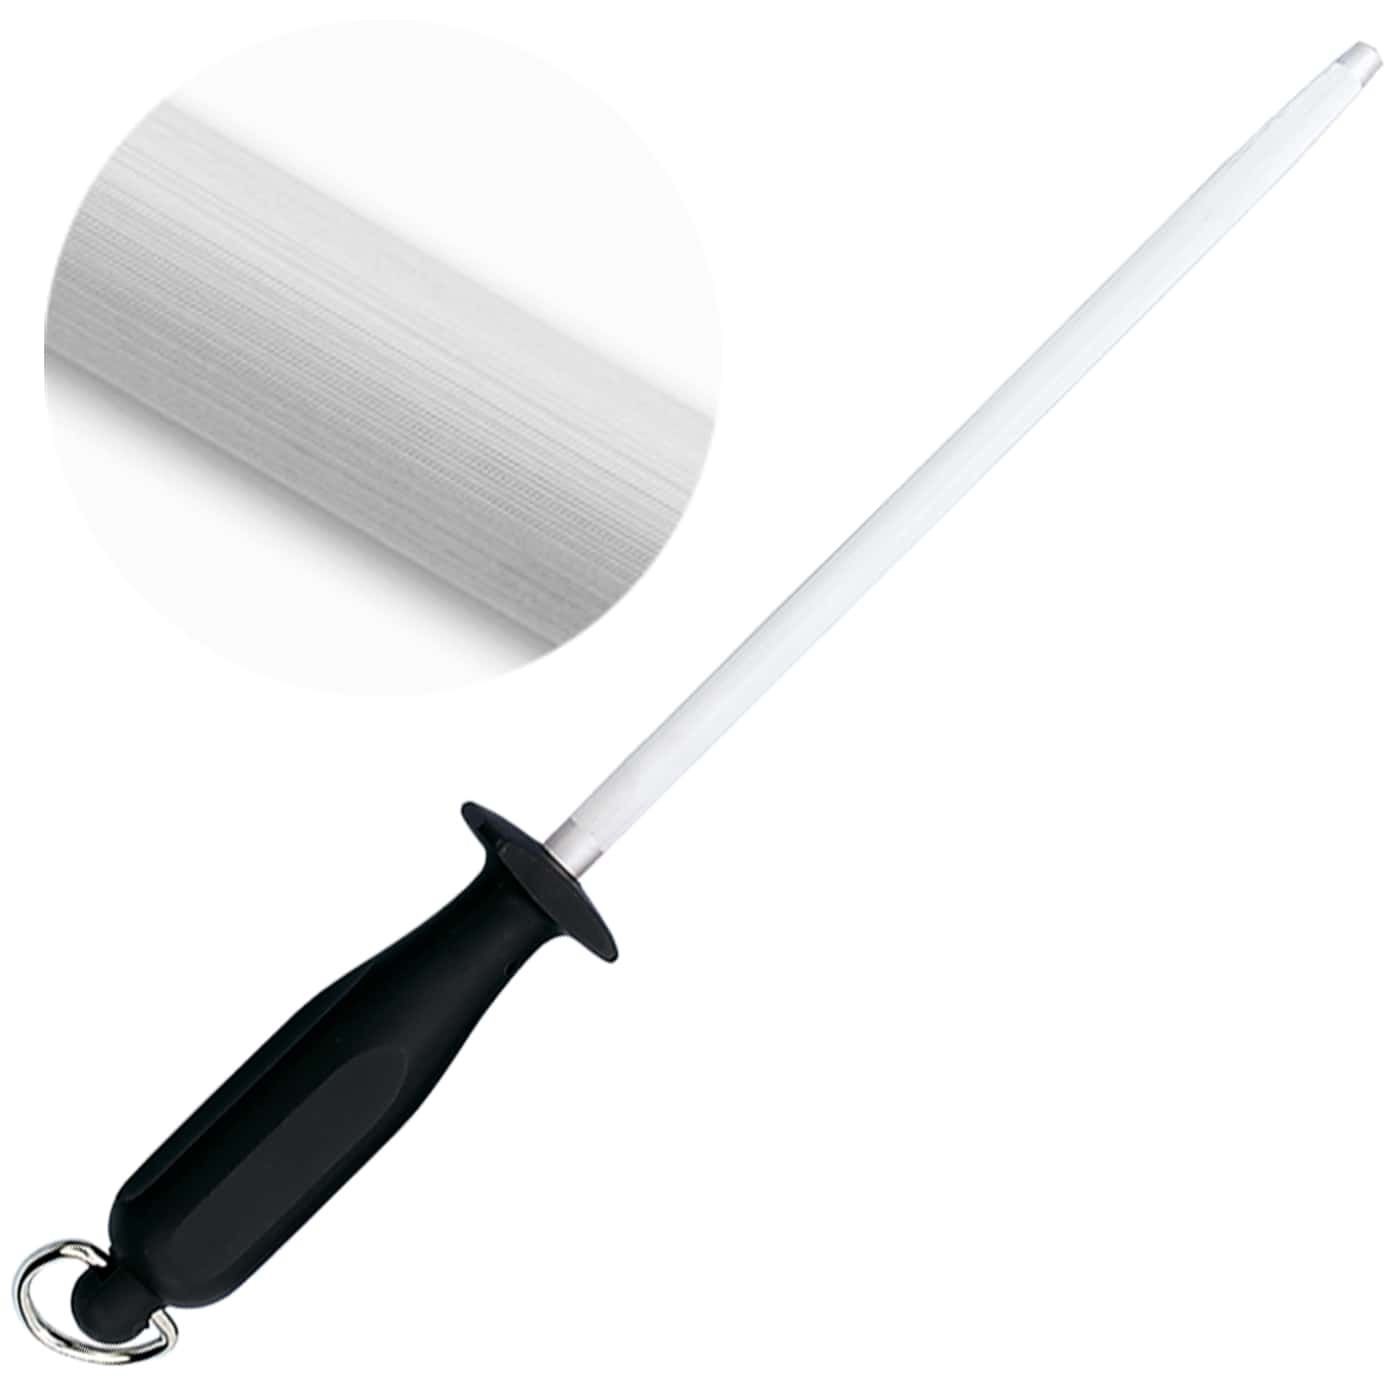 Mejore el proceso de afilado de sus cuchillos usando afiladores o chairas